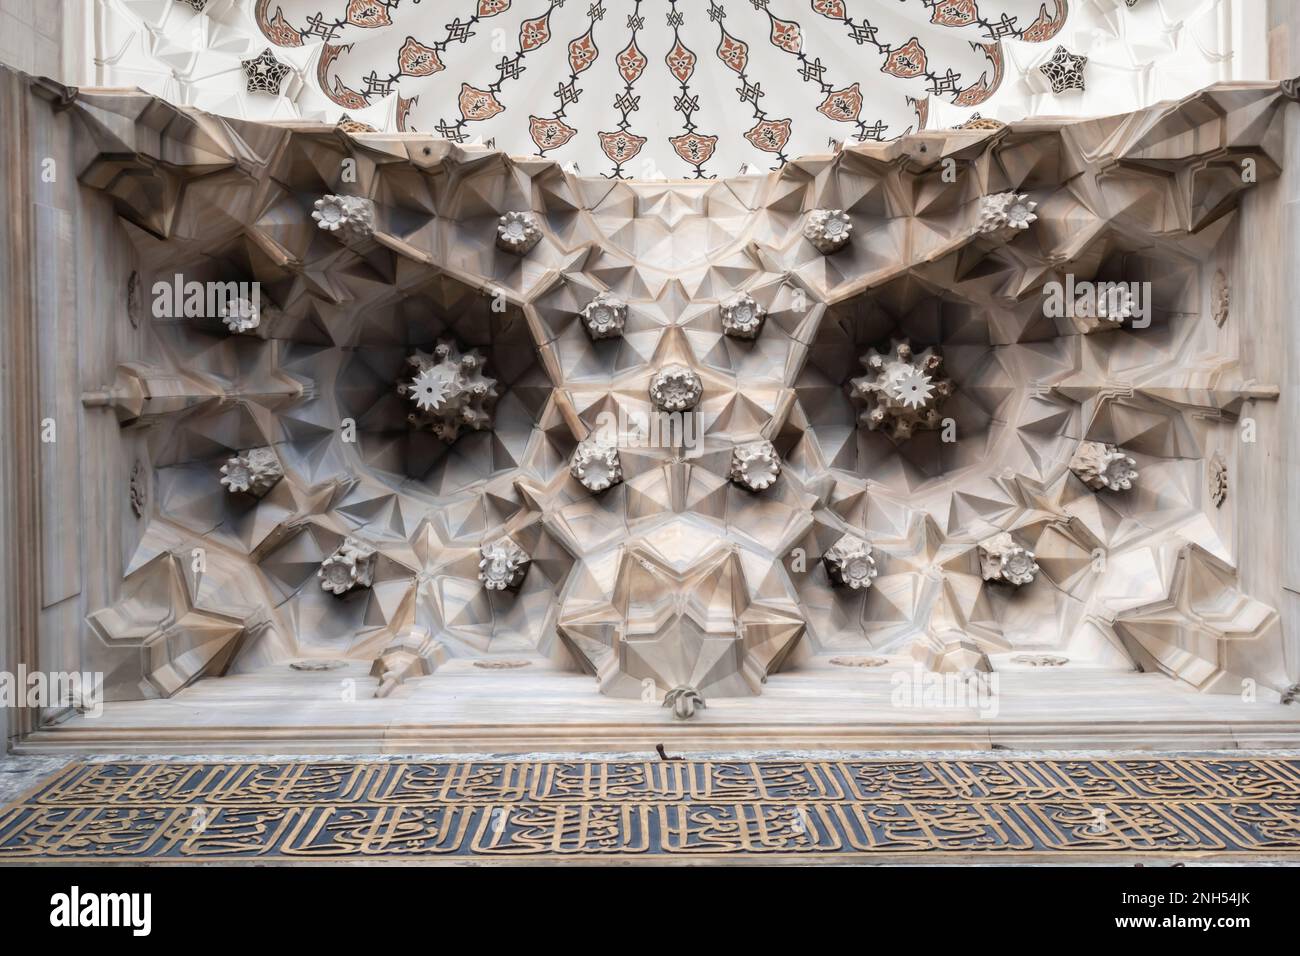 Dettaglio arredamento Moschea Süleymaniye. Una moschea imperiale ottomana situata sulla terza collina di Istanbul, Turchia. Architetto Mimar Sinan 16th ° secolo. Motivo OWL Foto Stock